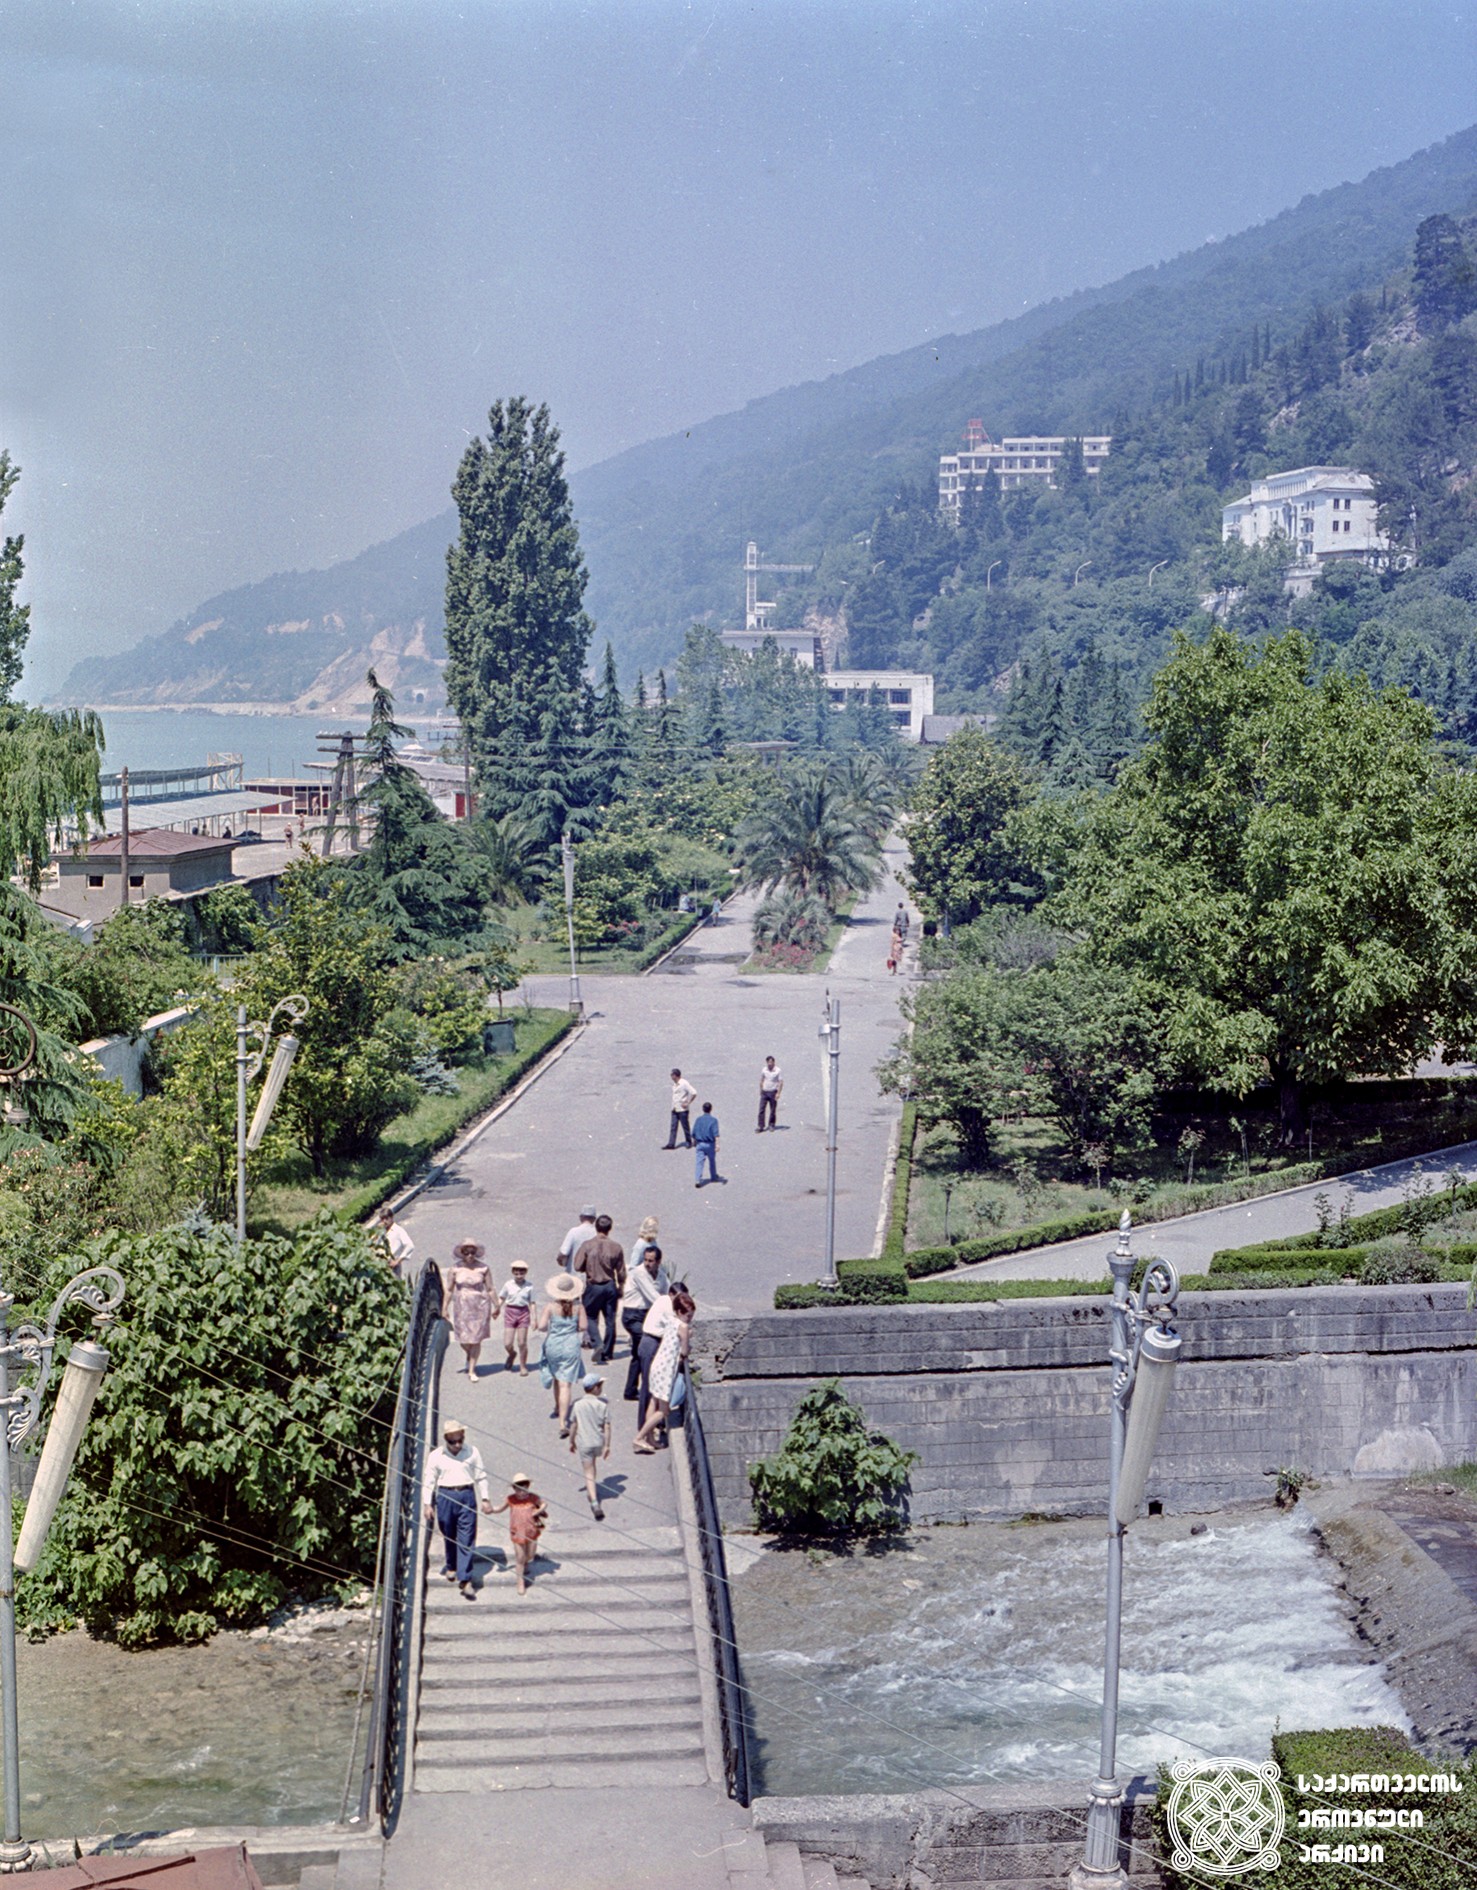 აფხაზეთი, გაგრა. 1972 წელი.
<br>
Abkhazia, Gagra. 1972.